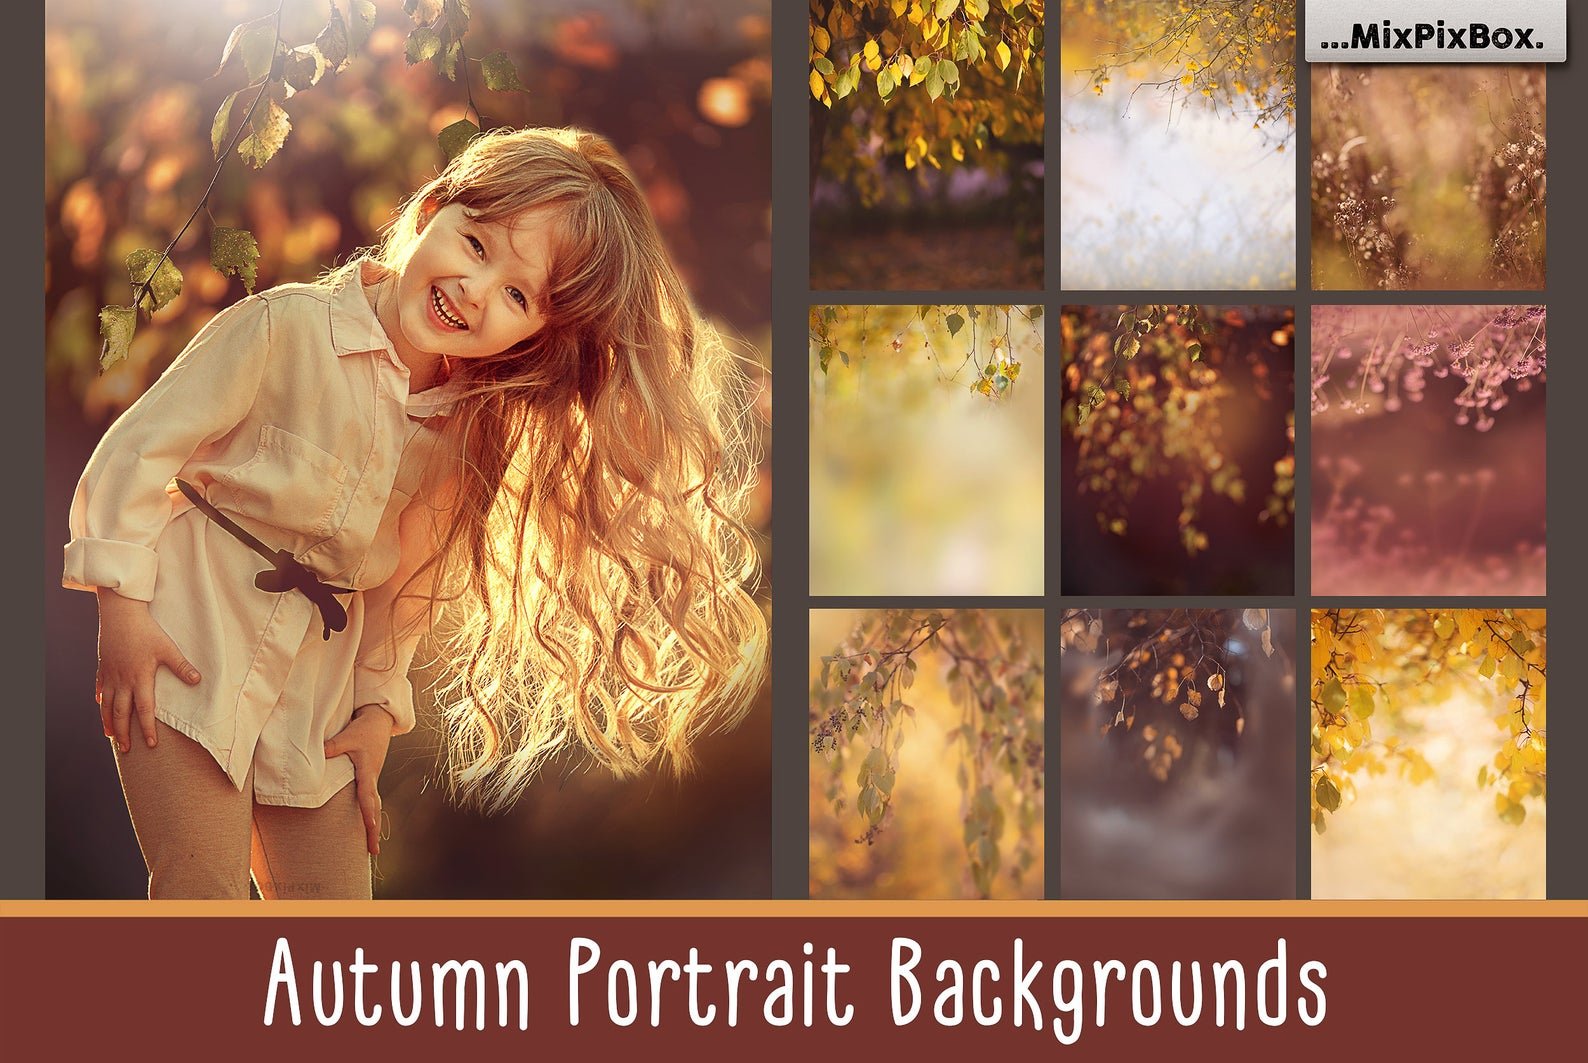 Autumn Portrait Backgroundscover image.